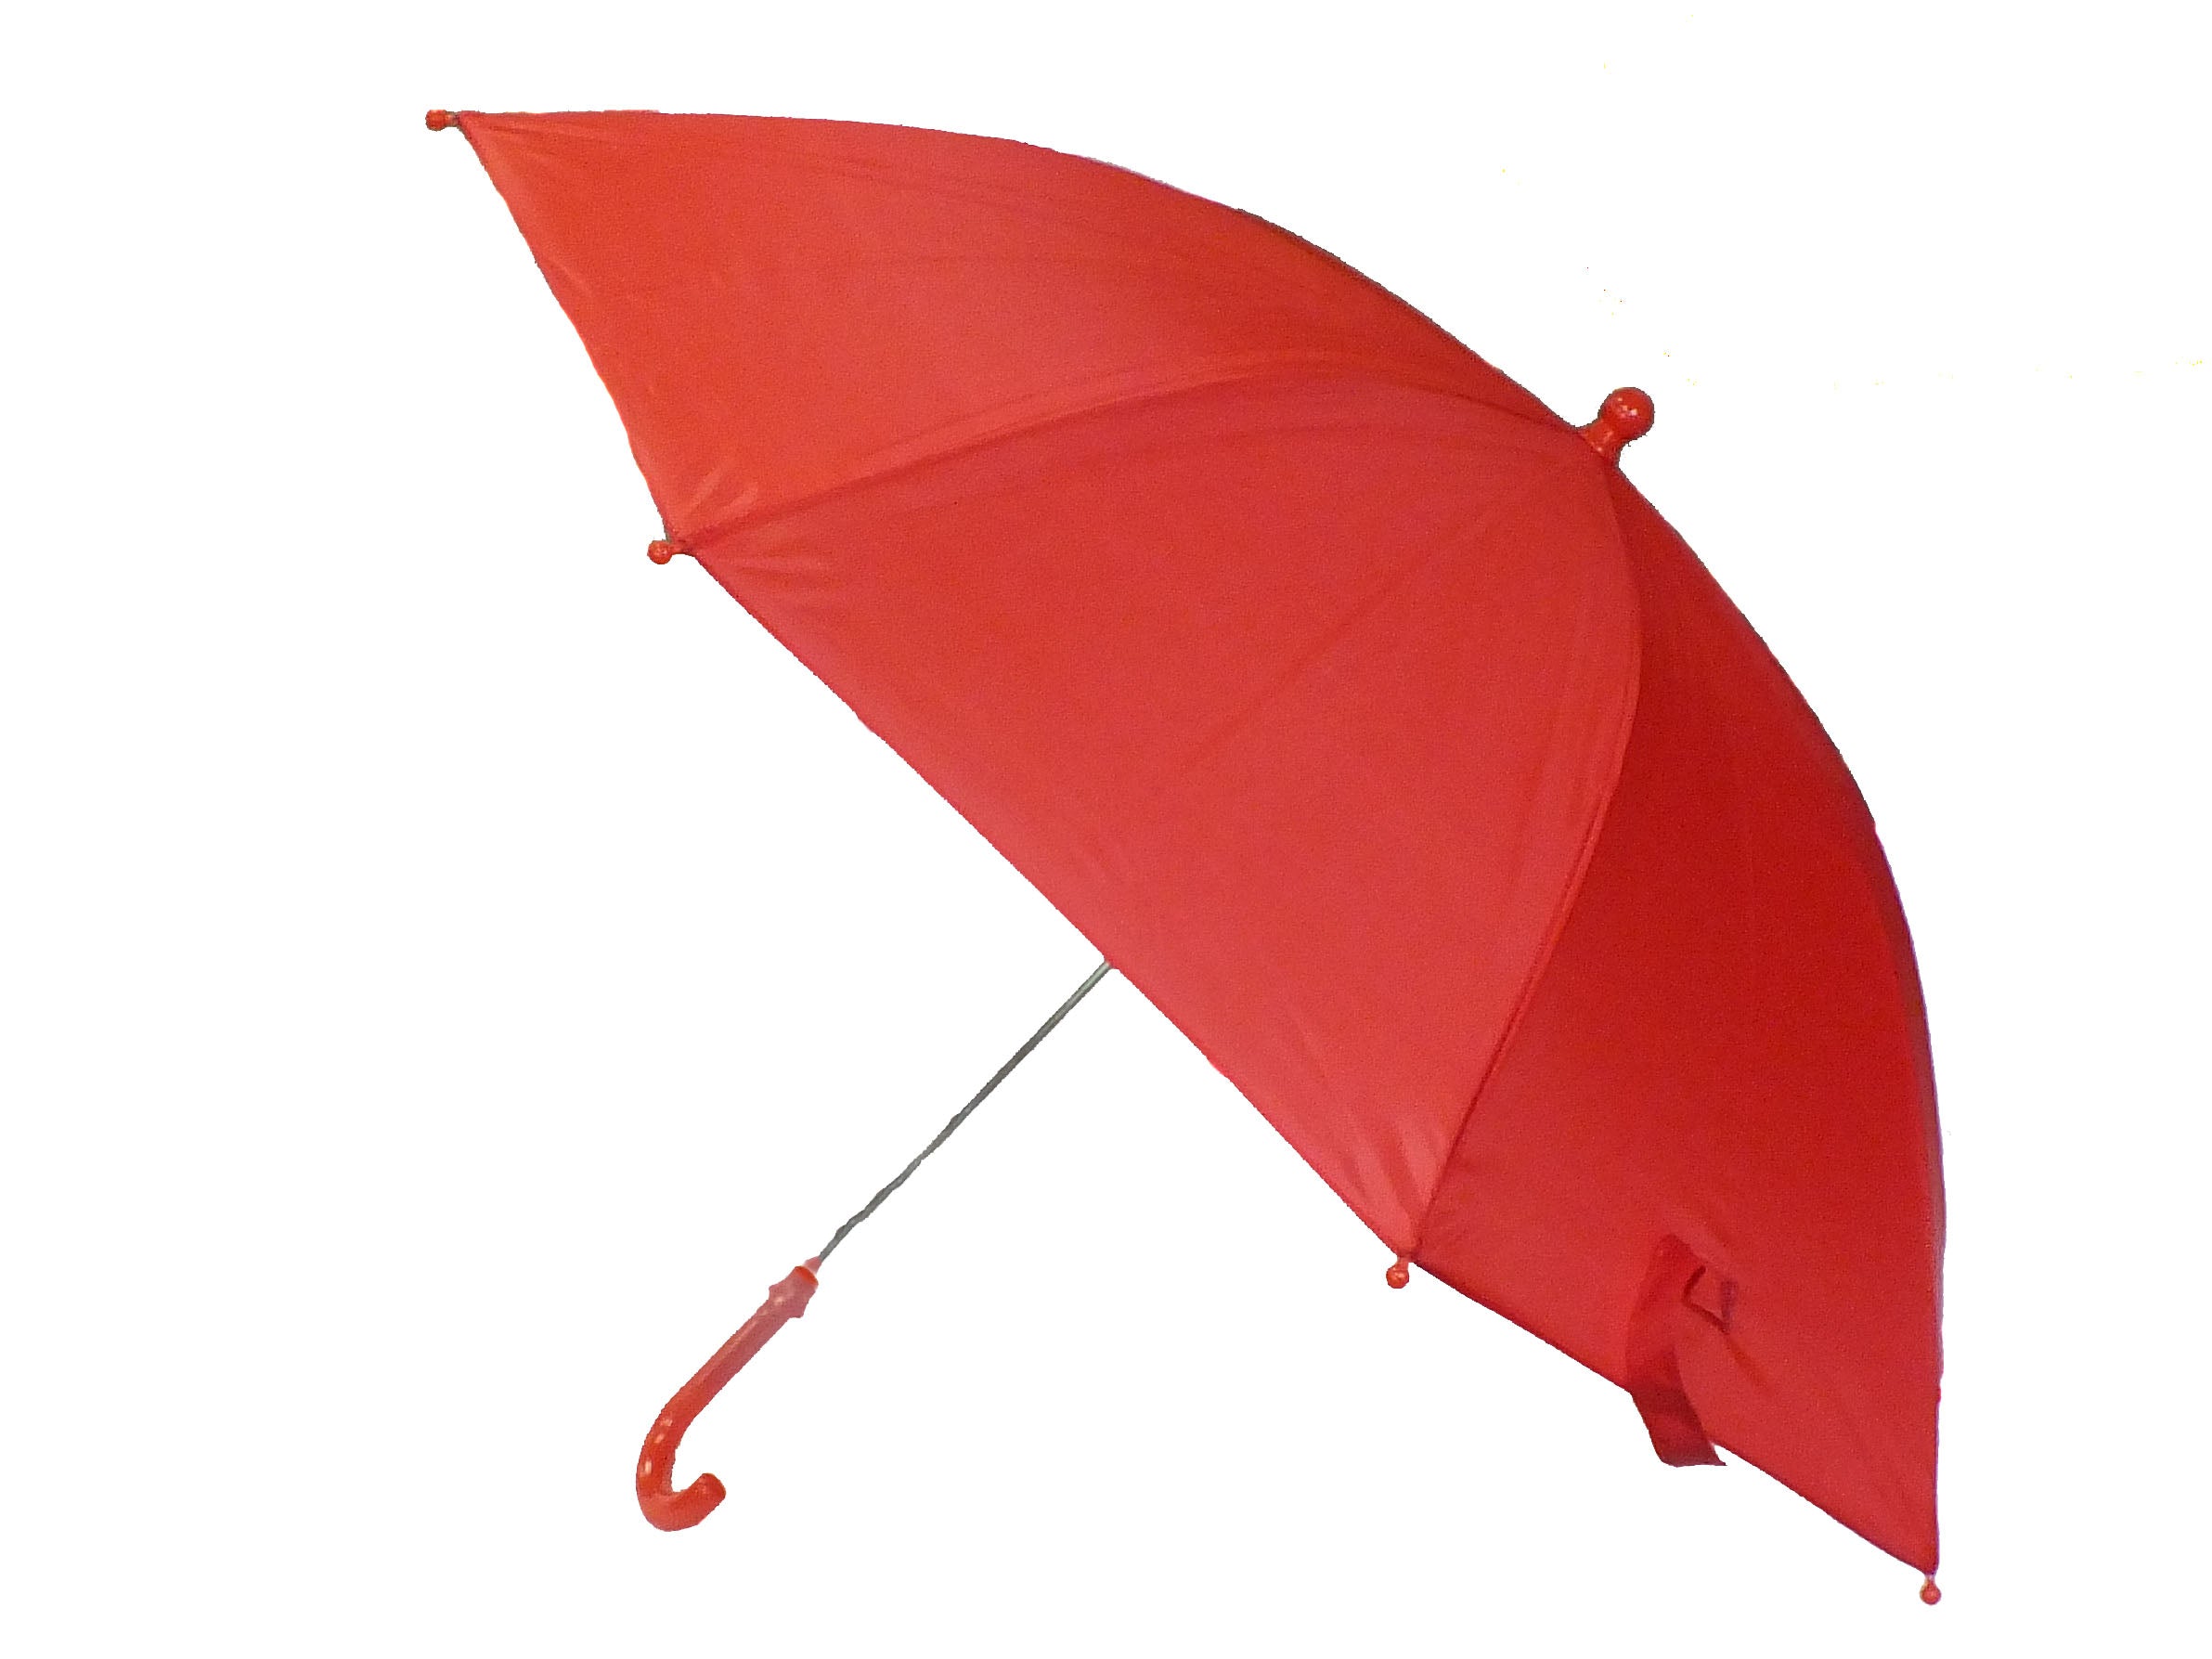 19" Red Umbrella